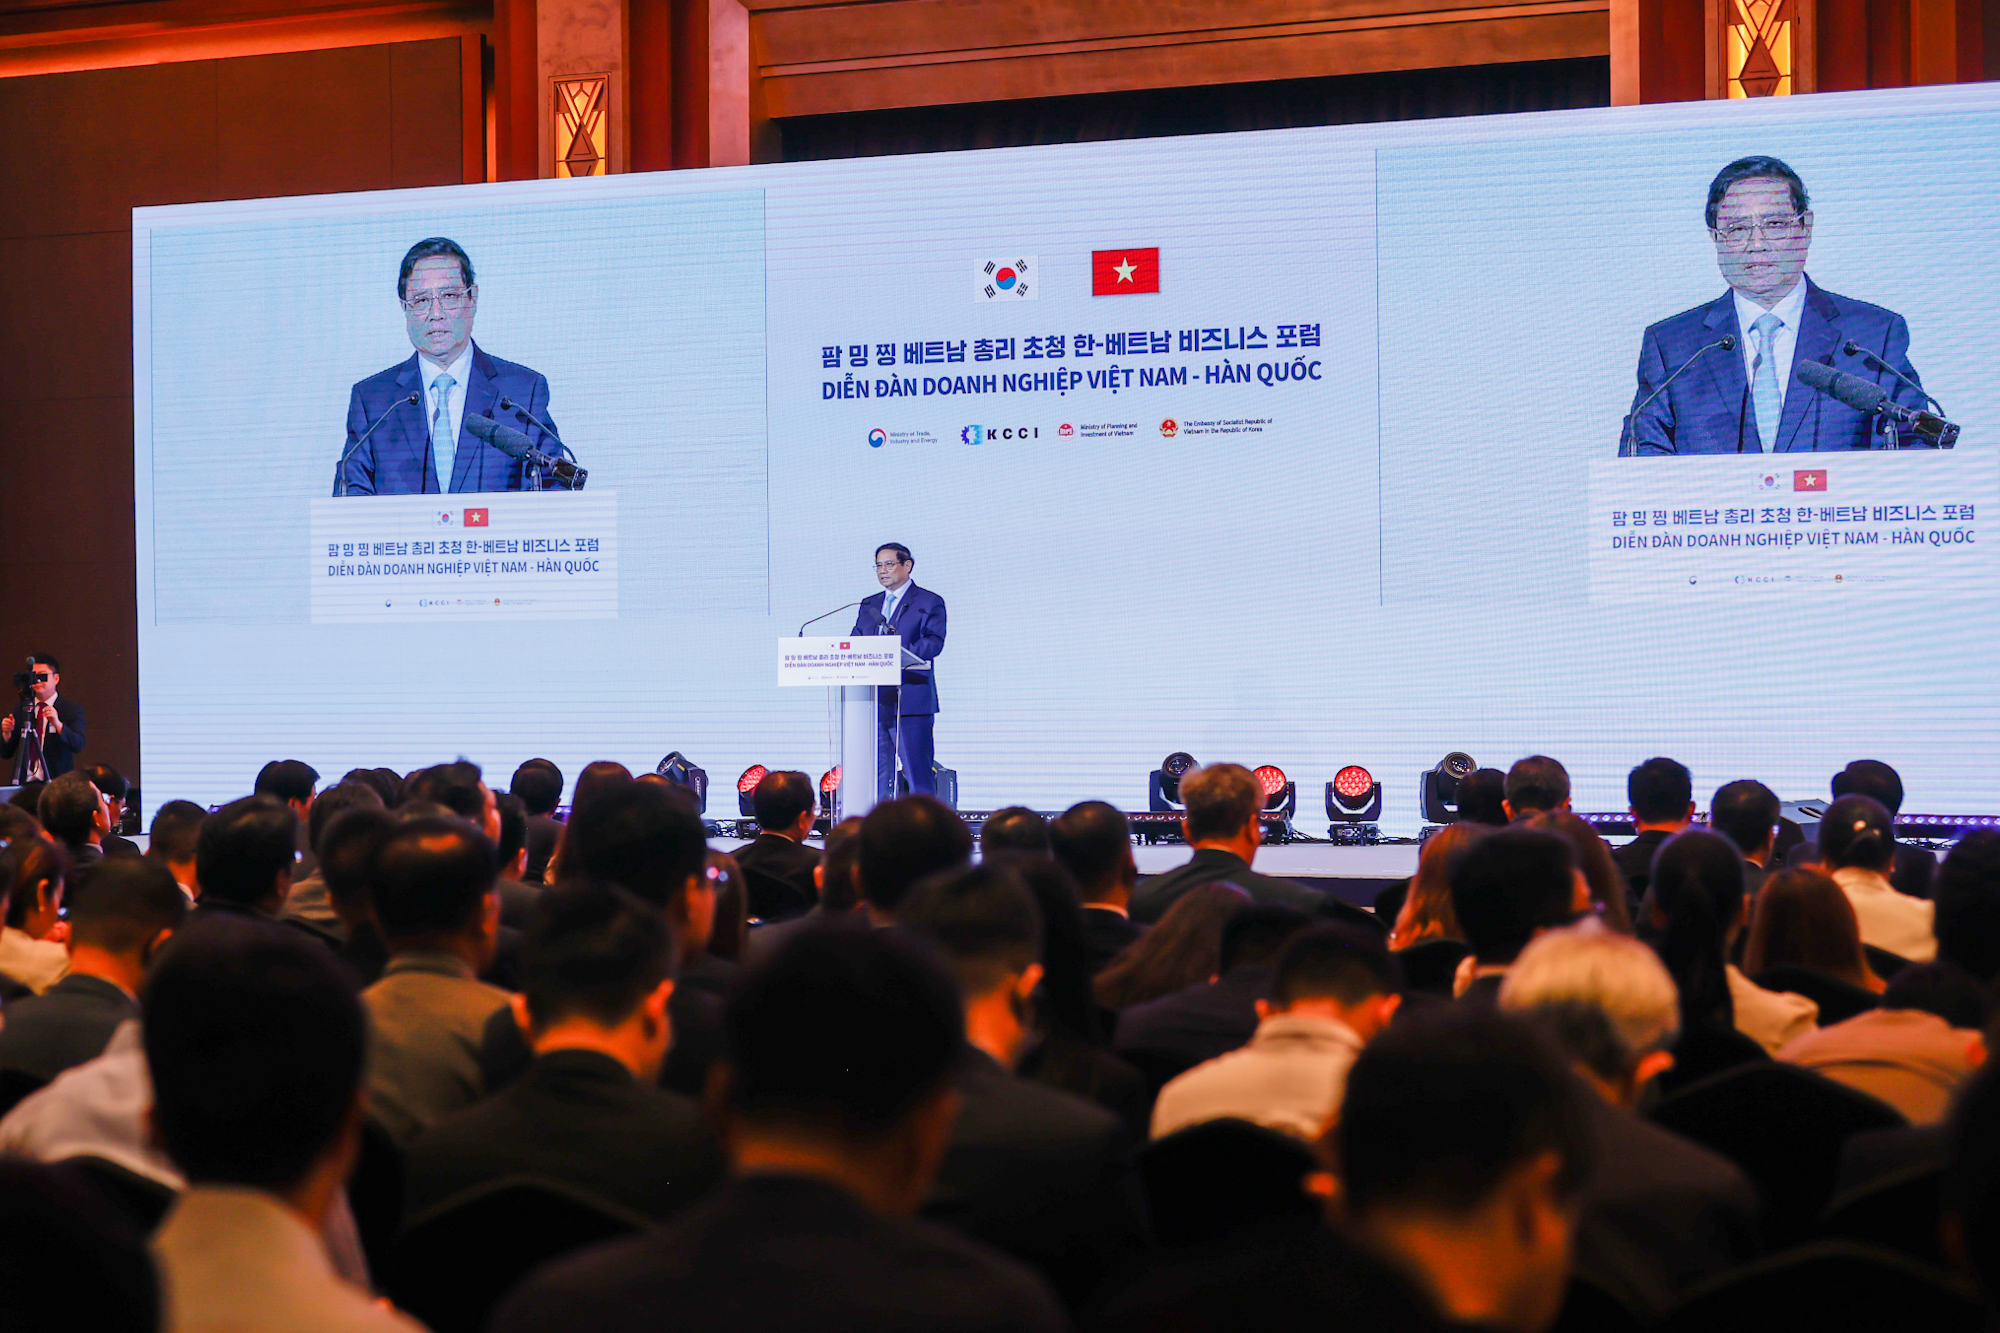 Thủ tướng đánh giá cao và trân trọng cảm ơn sự đóng góp thiết thực, hiệu quả của các doanh nghiệp Hàn Quốc đối với sự phát triển của kinh tế - xã hội Việt Nam - Ảnh: VGP/Nhật Bắc